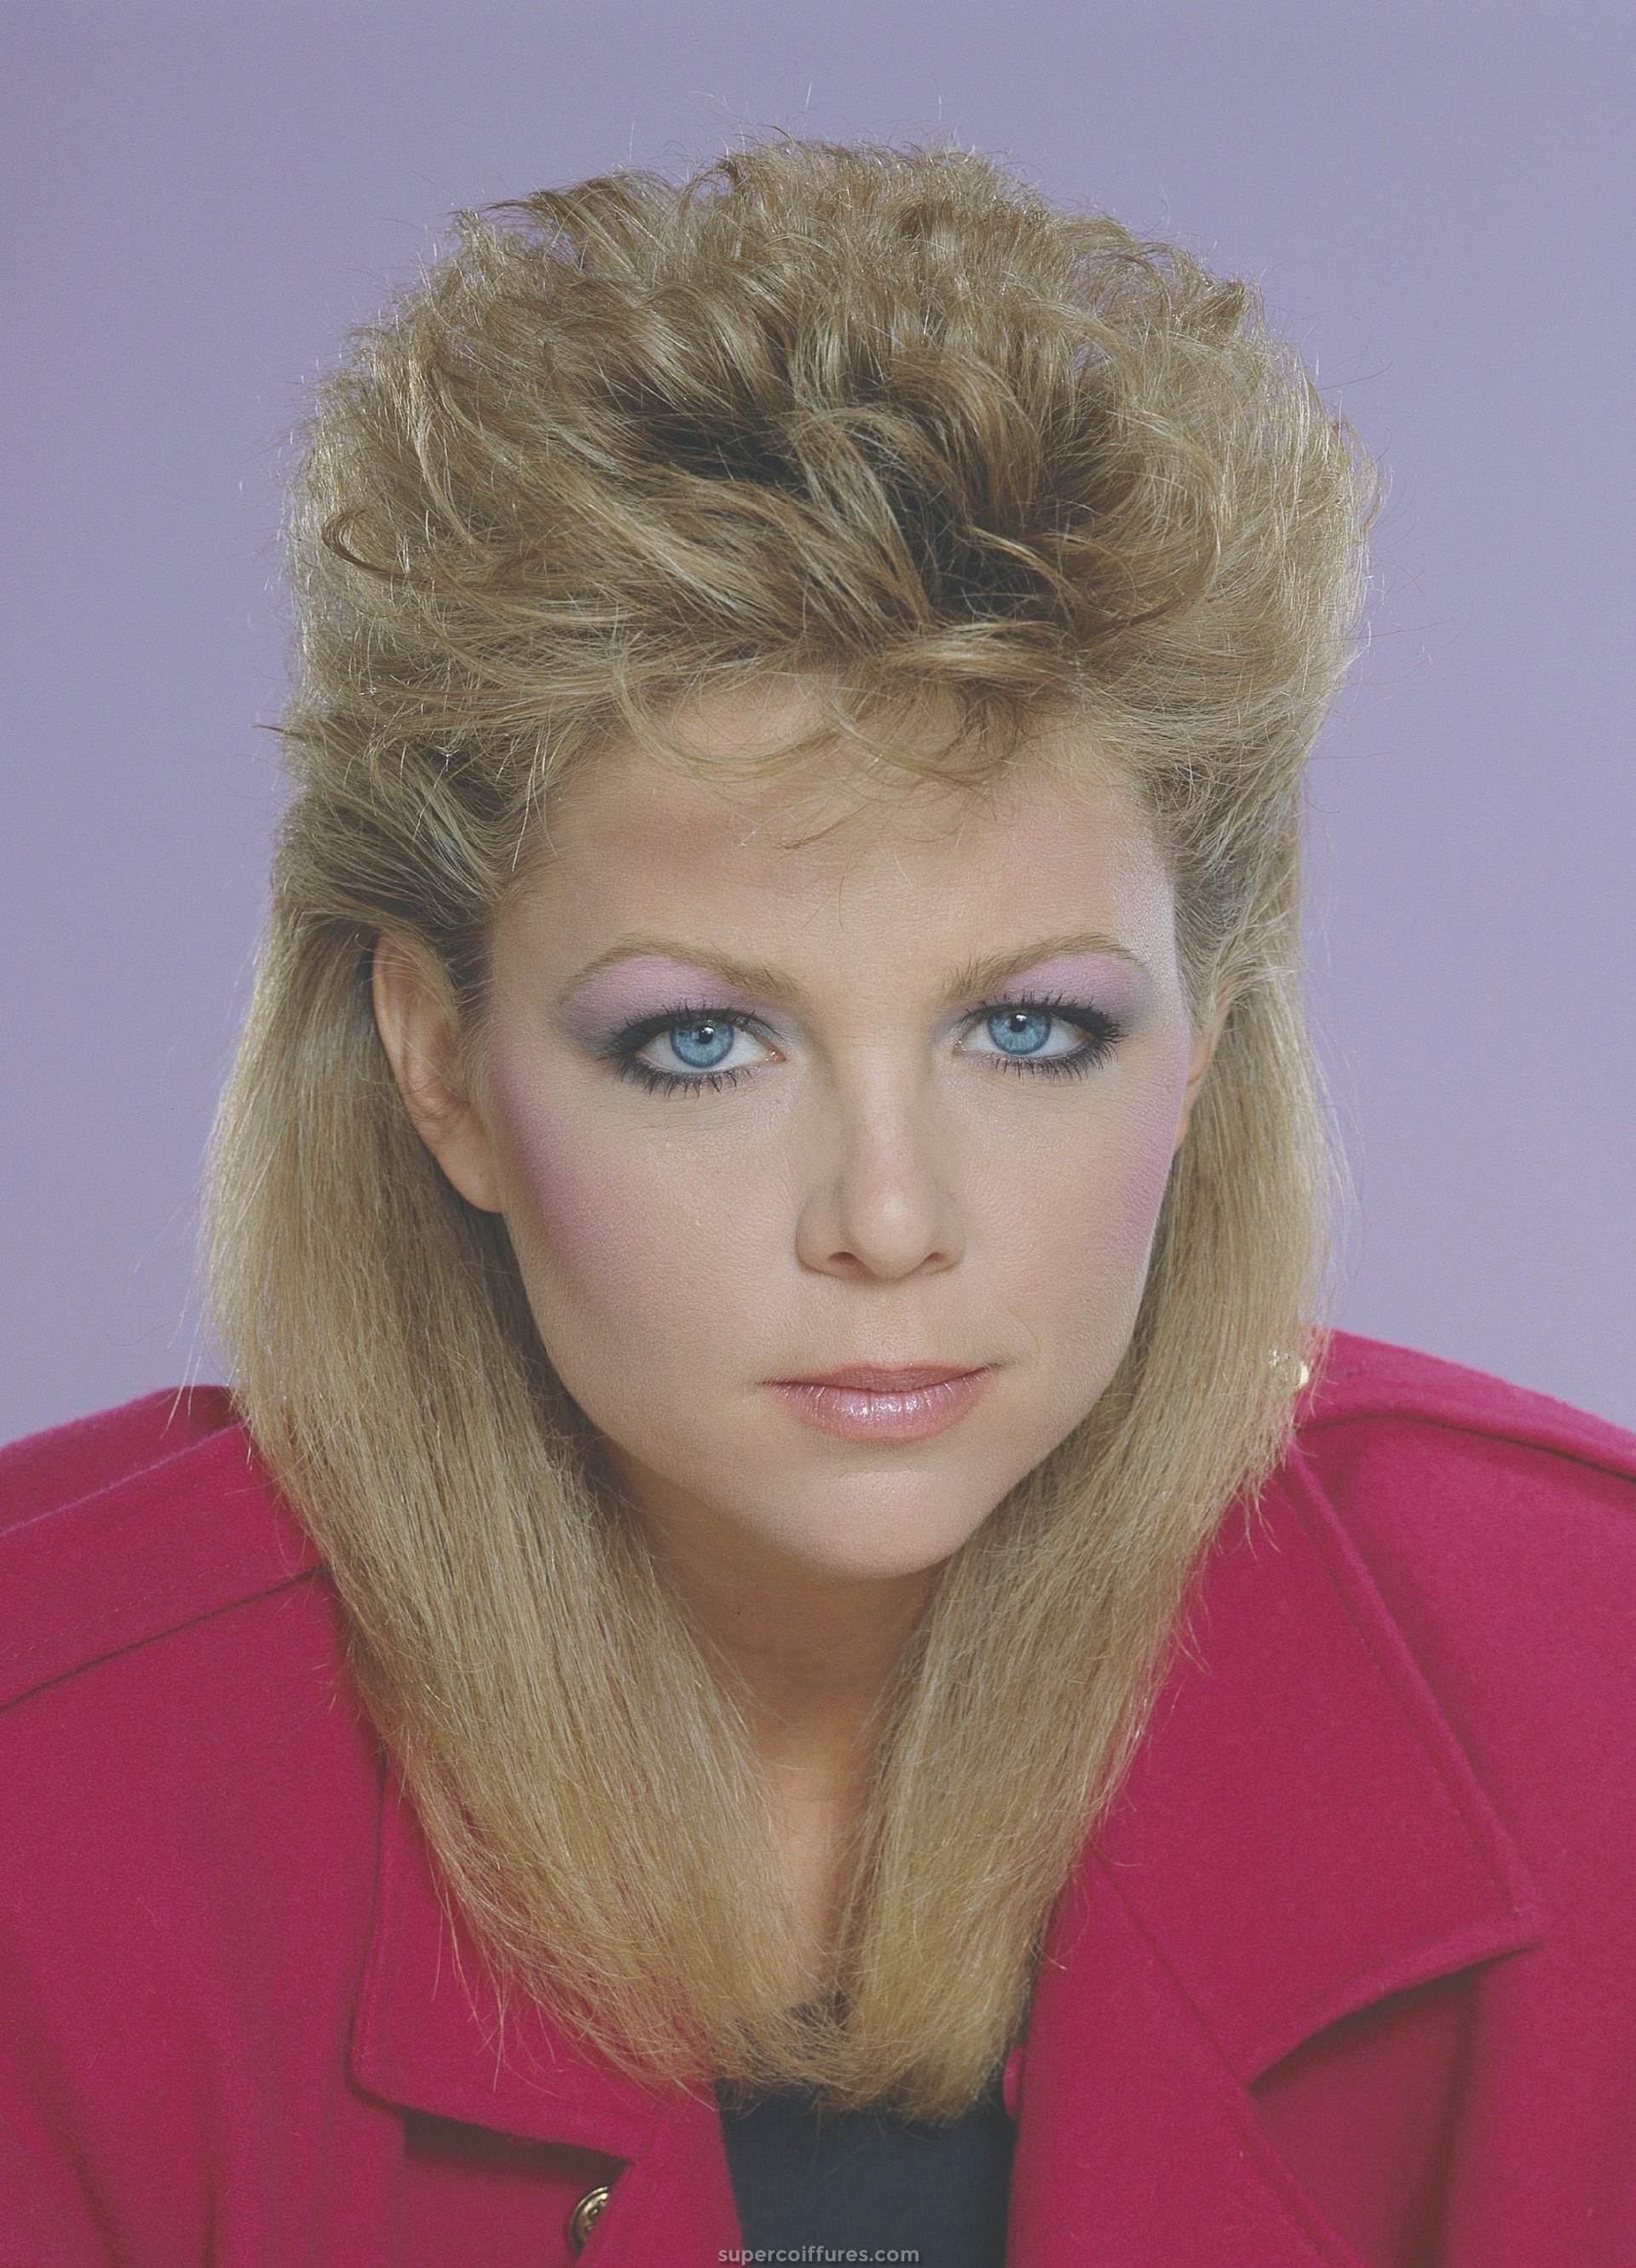 Les 25 coiffures des années 80 les plus somptueuses juste pour vous - Il est temps de chérir le vieux glamour